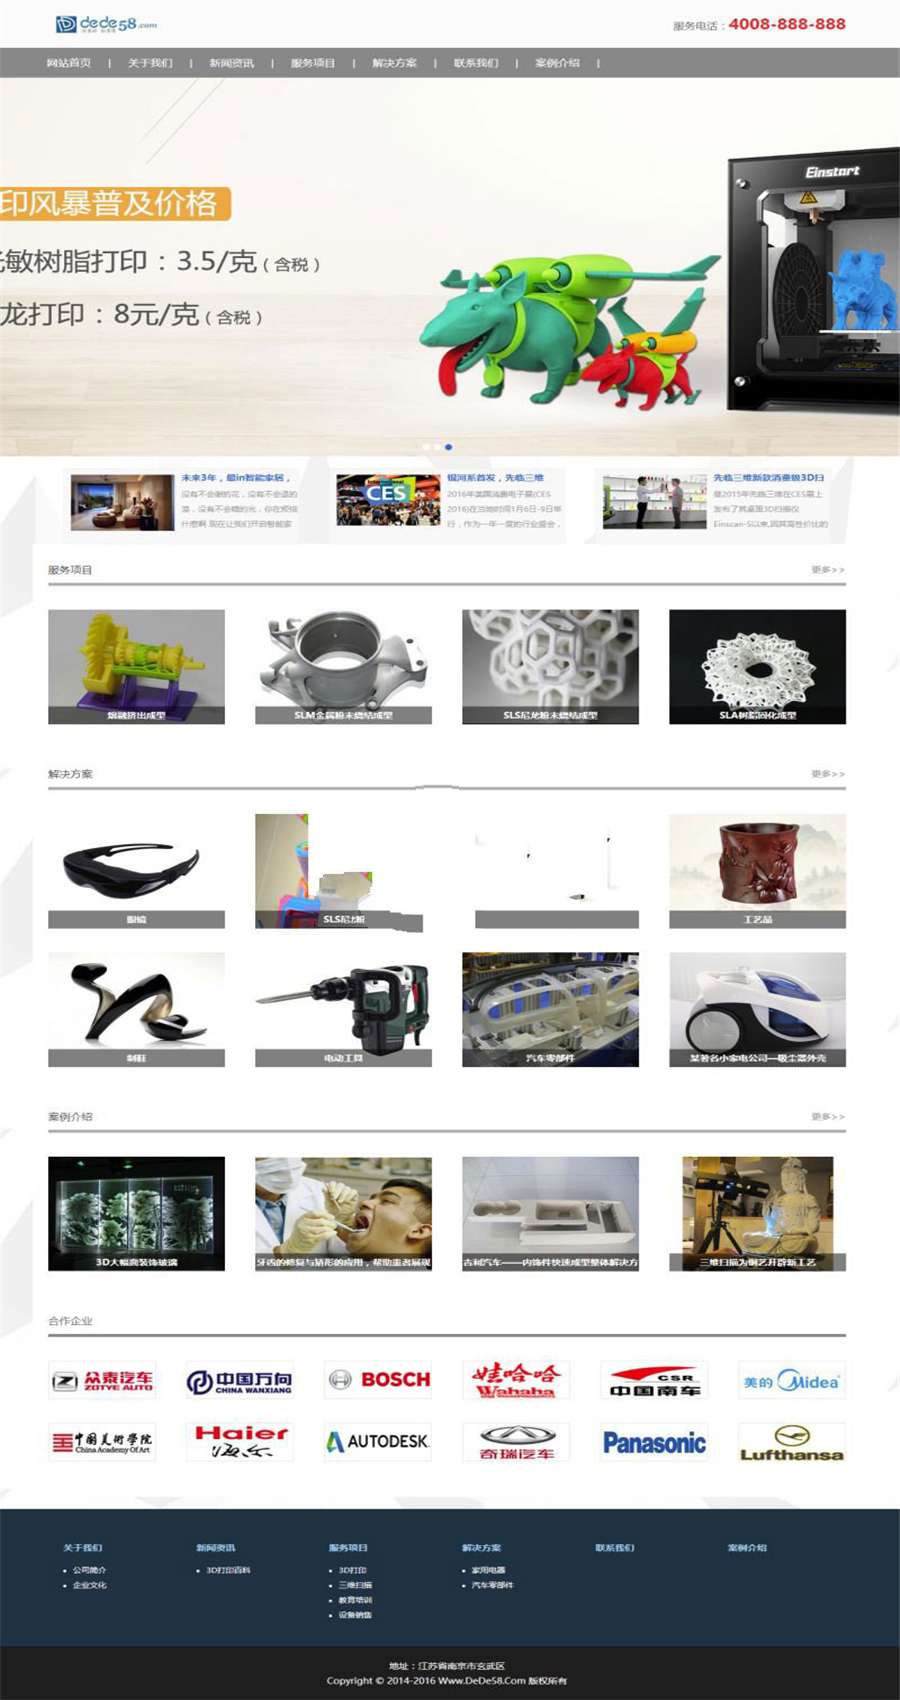 [整站源码]织梦dedecms响应式3D打印设备公司网站模板(自适应手机移动端)插图